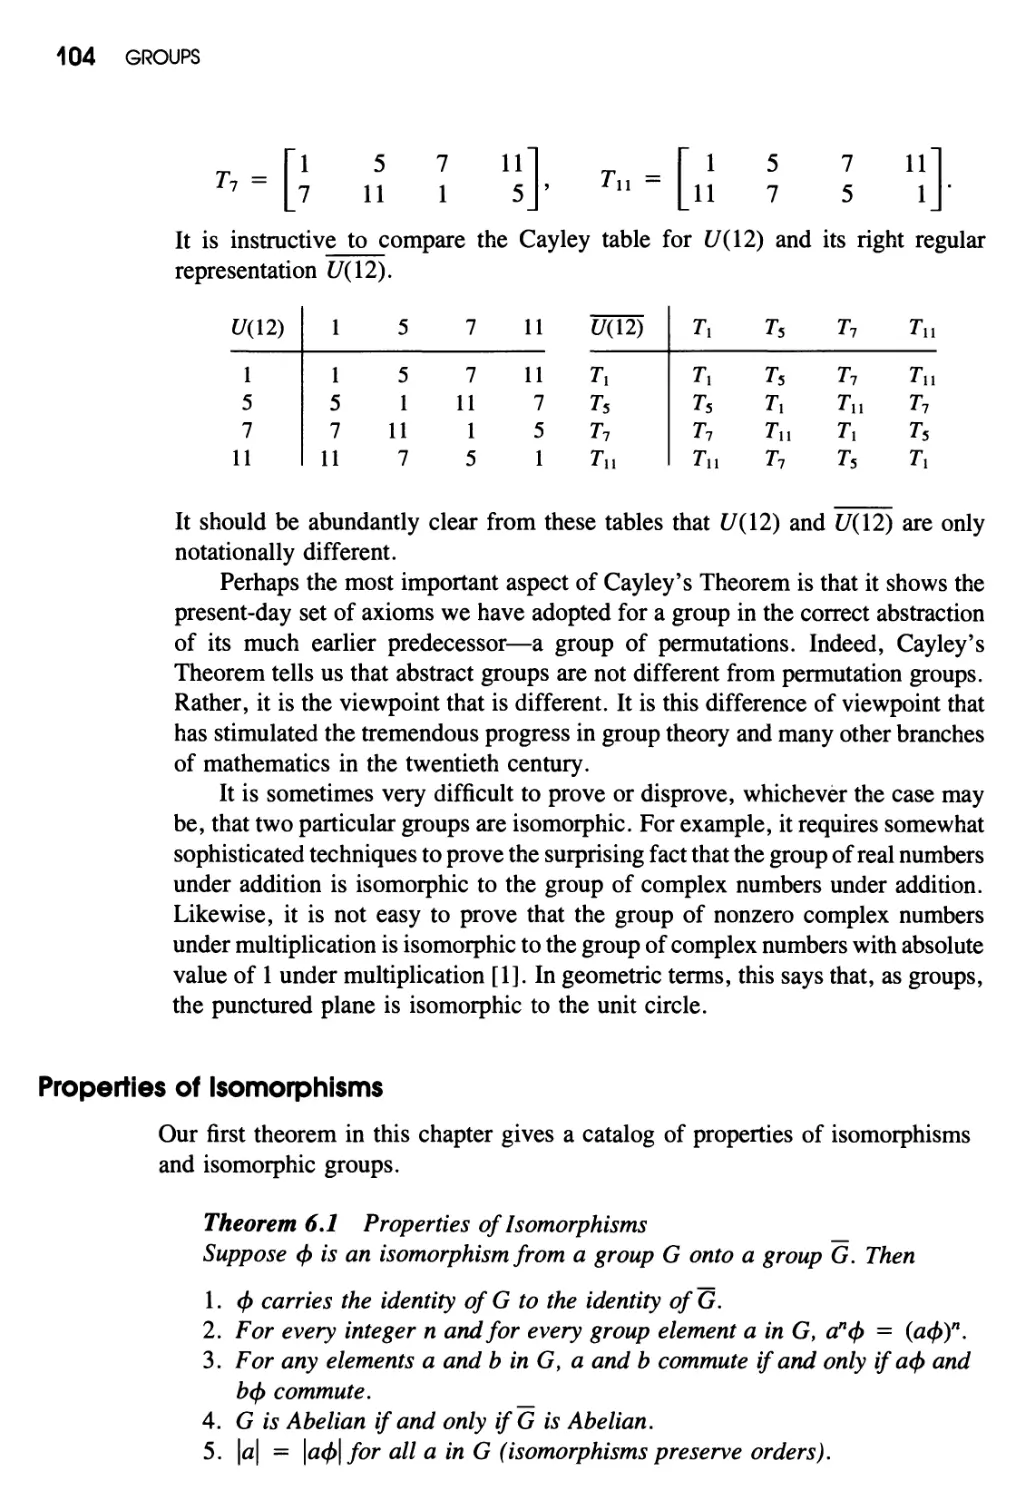 Properties of Isomorphisms